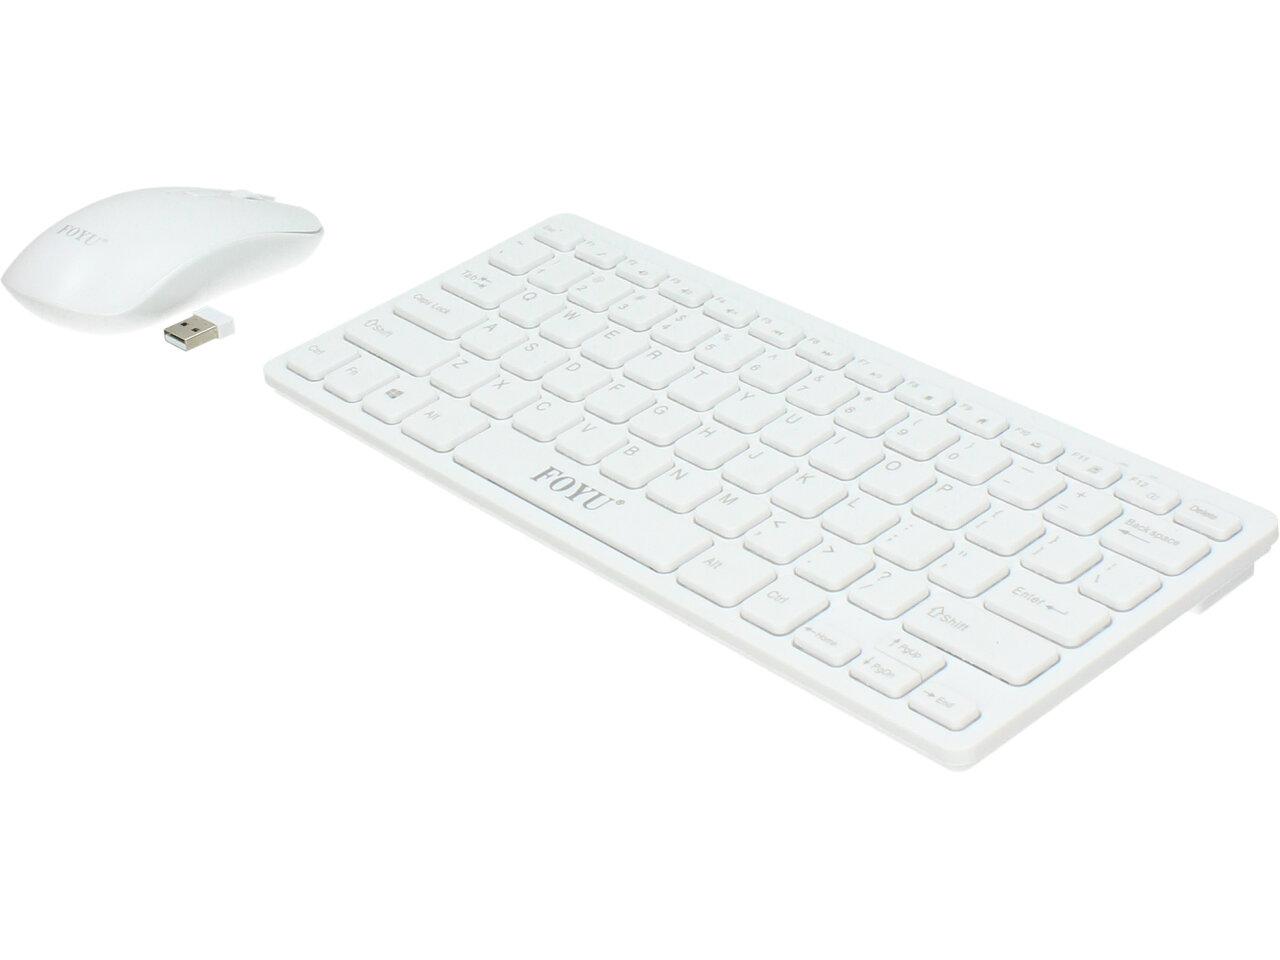 Bezdrátová klávesnice s myší FO-D001